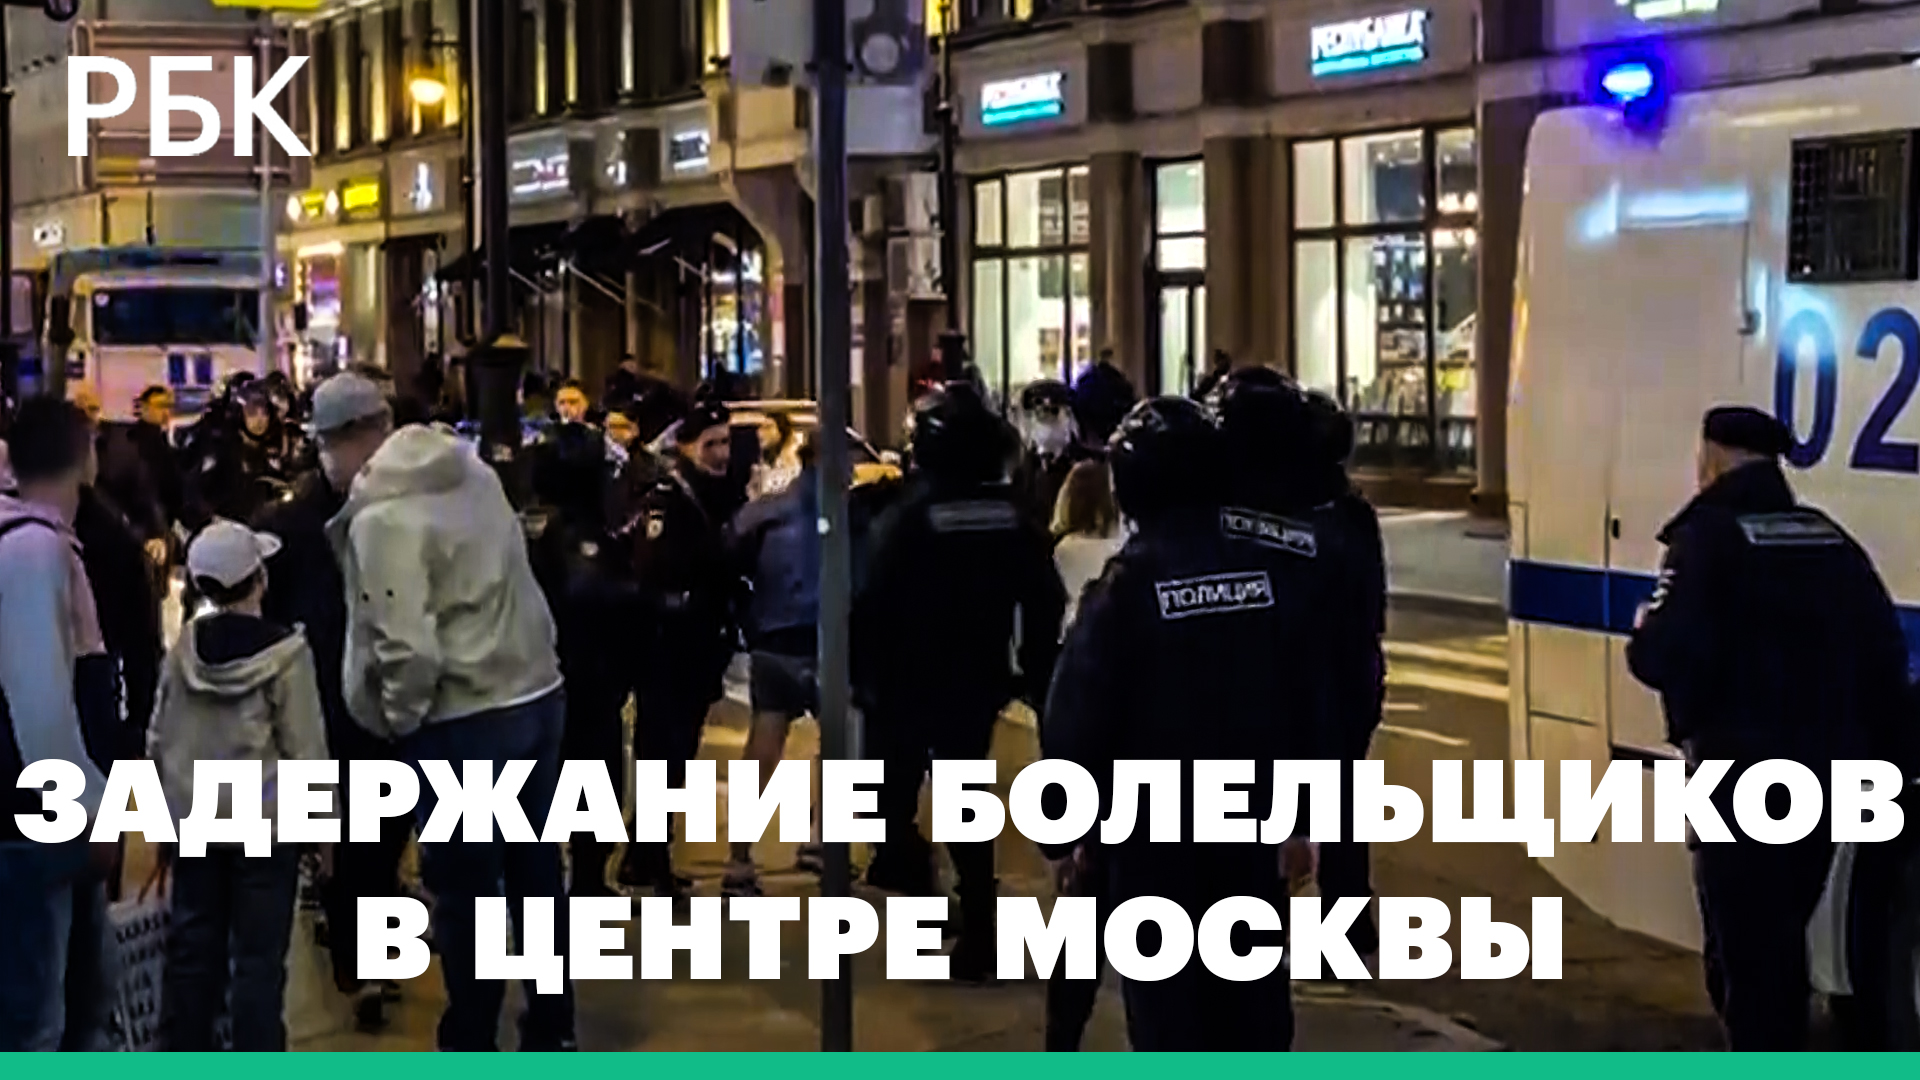 Около 50 болельщиков «Спартака» задержали за нарушение порядка в центре Москвы